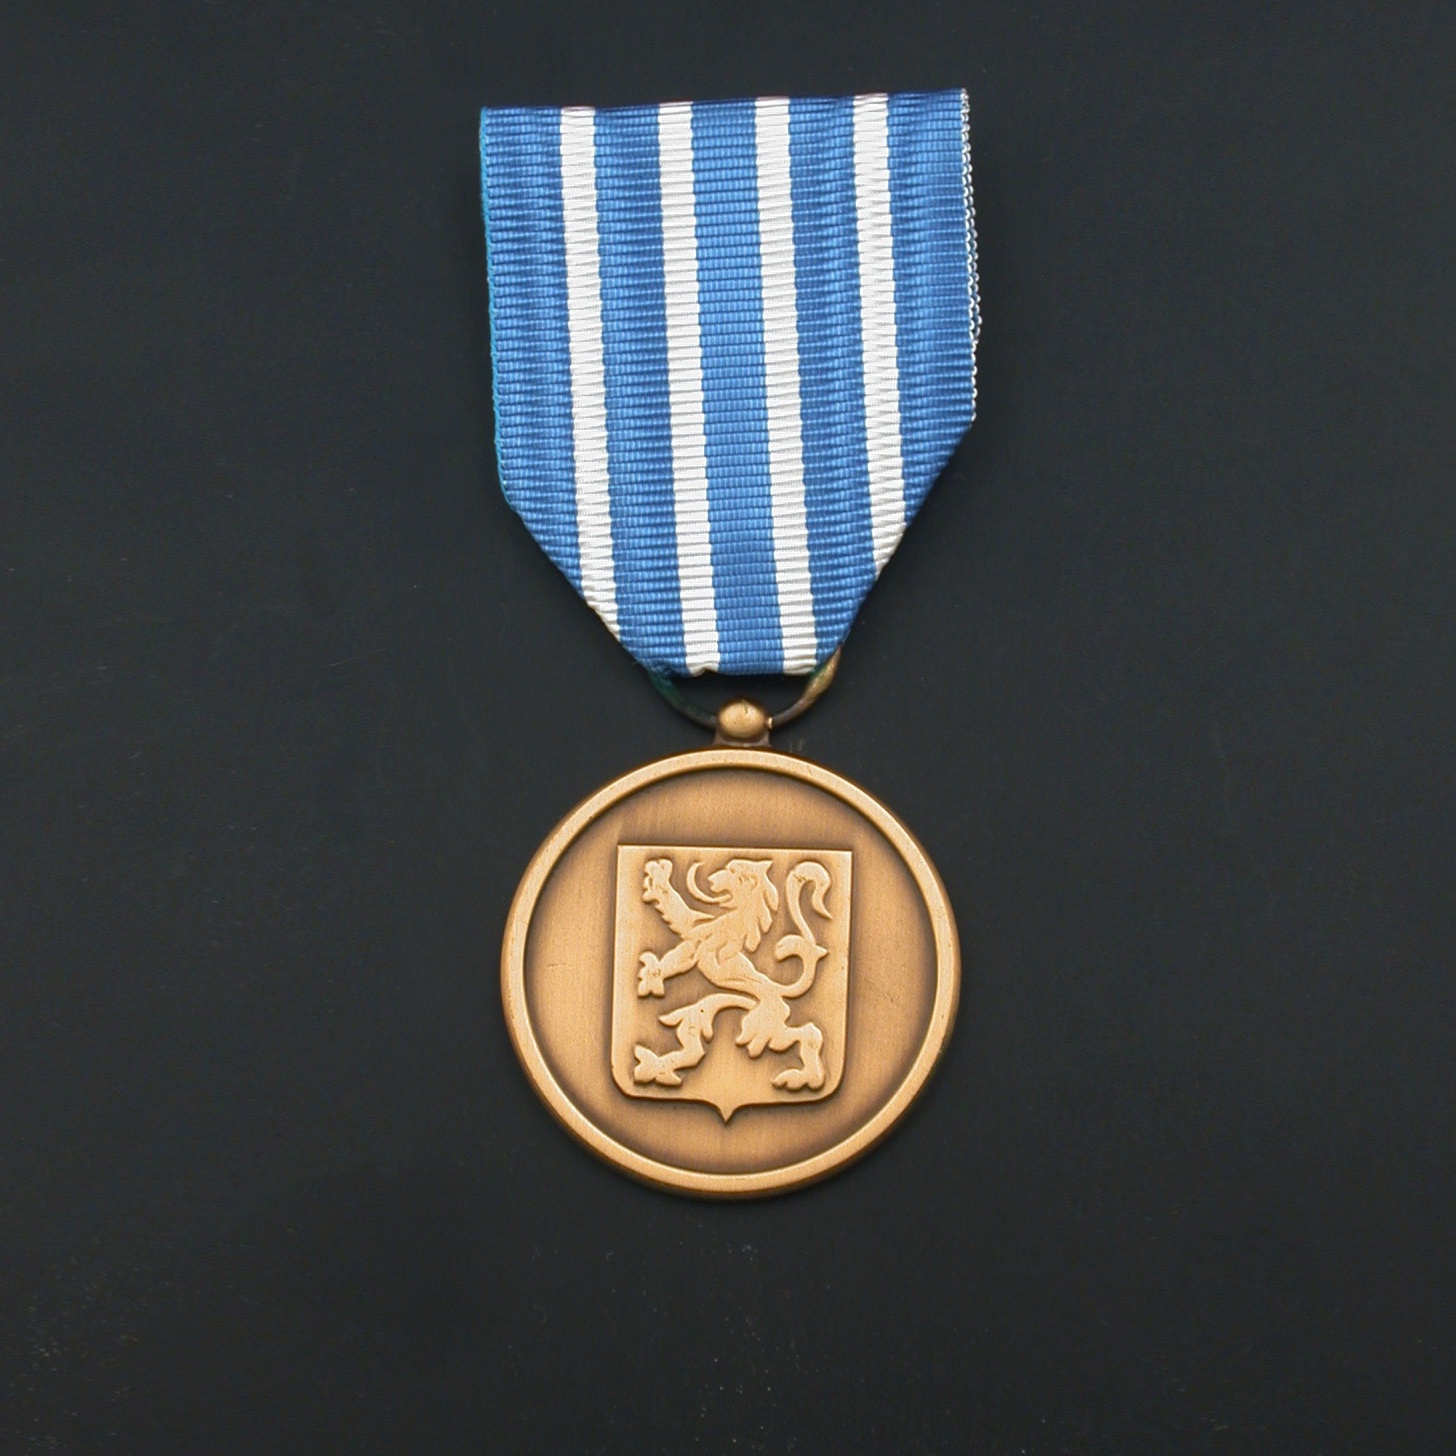 officieel-oorlogsereteken-medaille-voor-militaire-verdienste-01-01-10-oorlog-militaire-verdienste-officieel-model.jpg